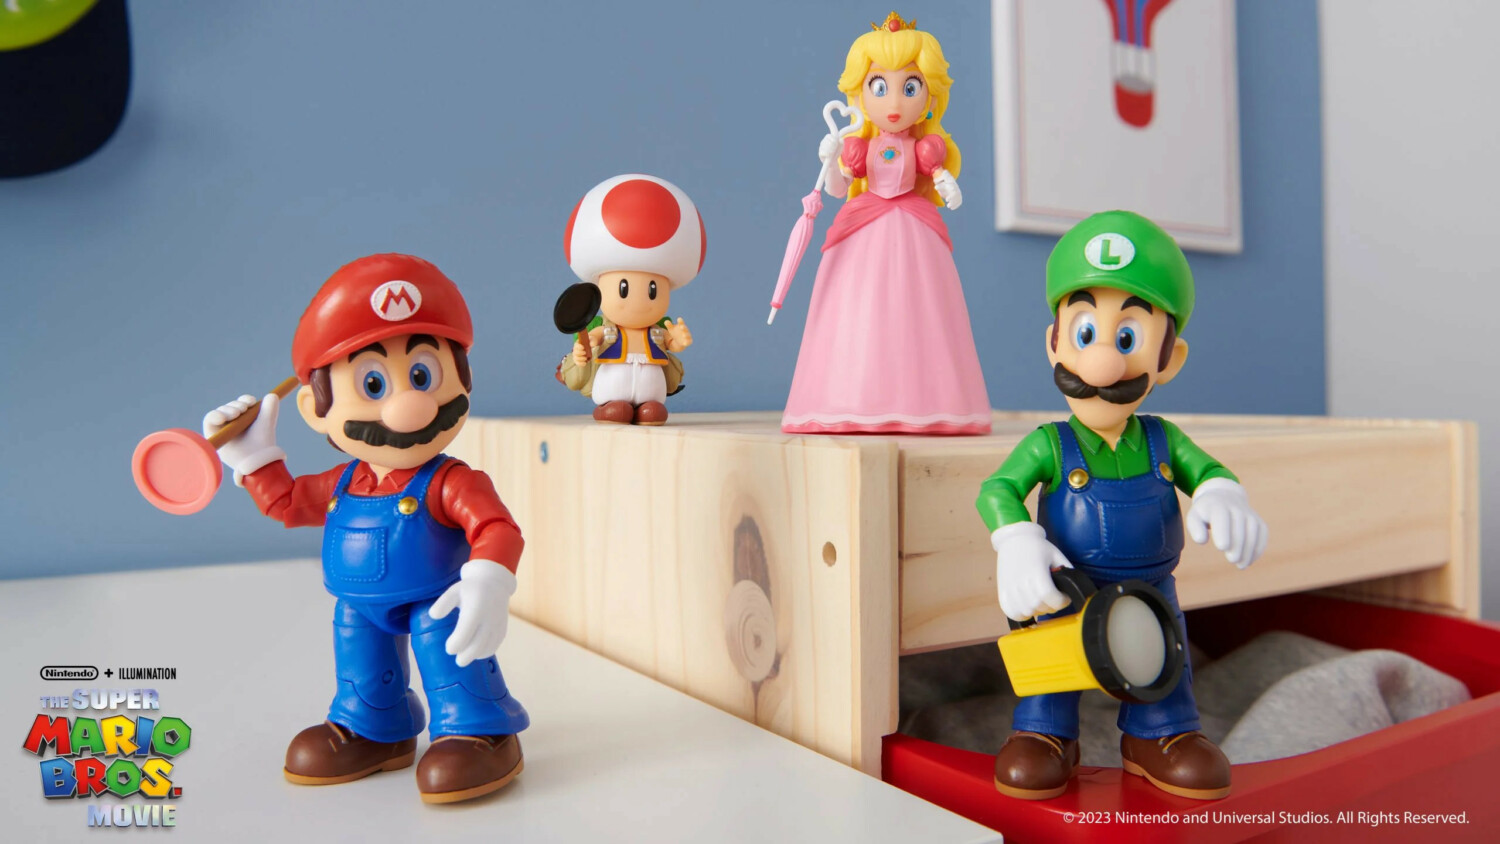 JAKKS Pacific Reveals Full Lineup Of Super Mario Bros Movie Toys